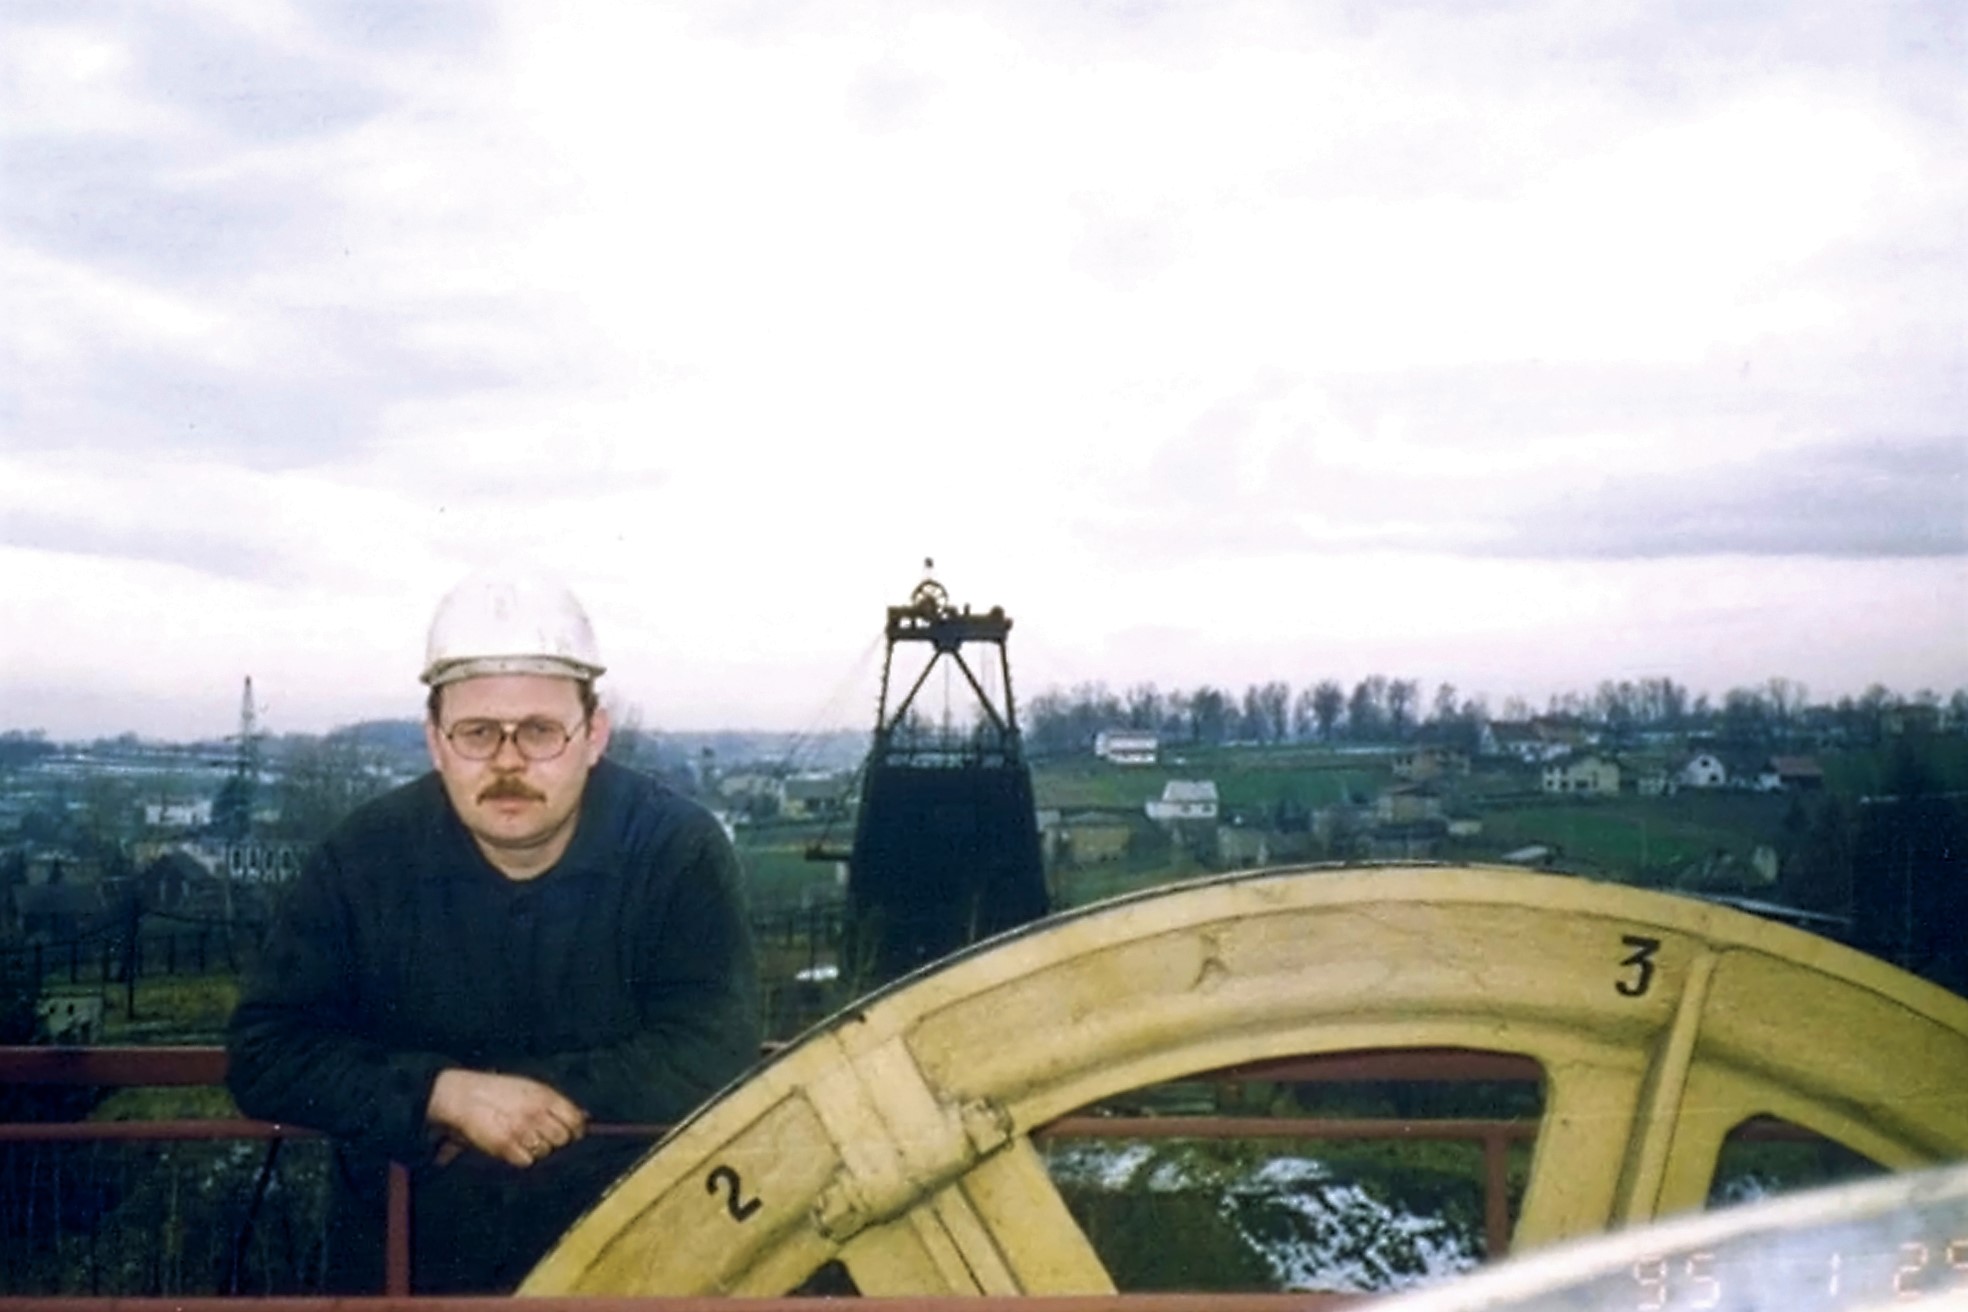 Widok z szybu V na szyb VII. W tle panorama Krostoszowic. Na zdjęciu nieznany pracownik, Zdjęcie wykonano prawdopodobnie w 1995 r.